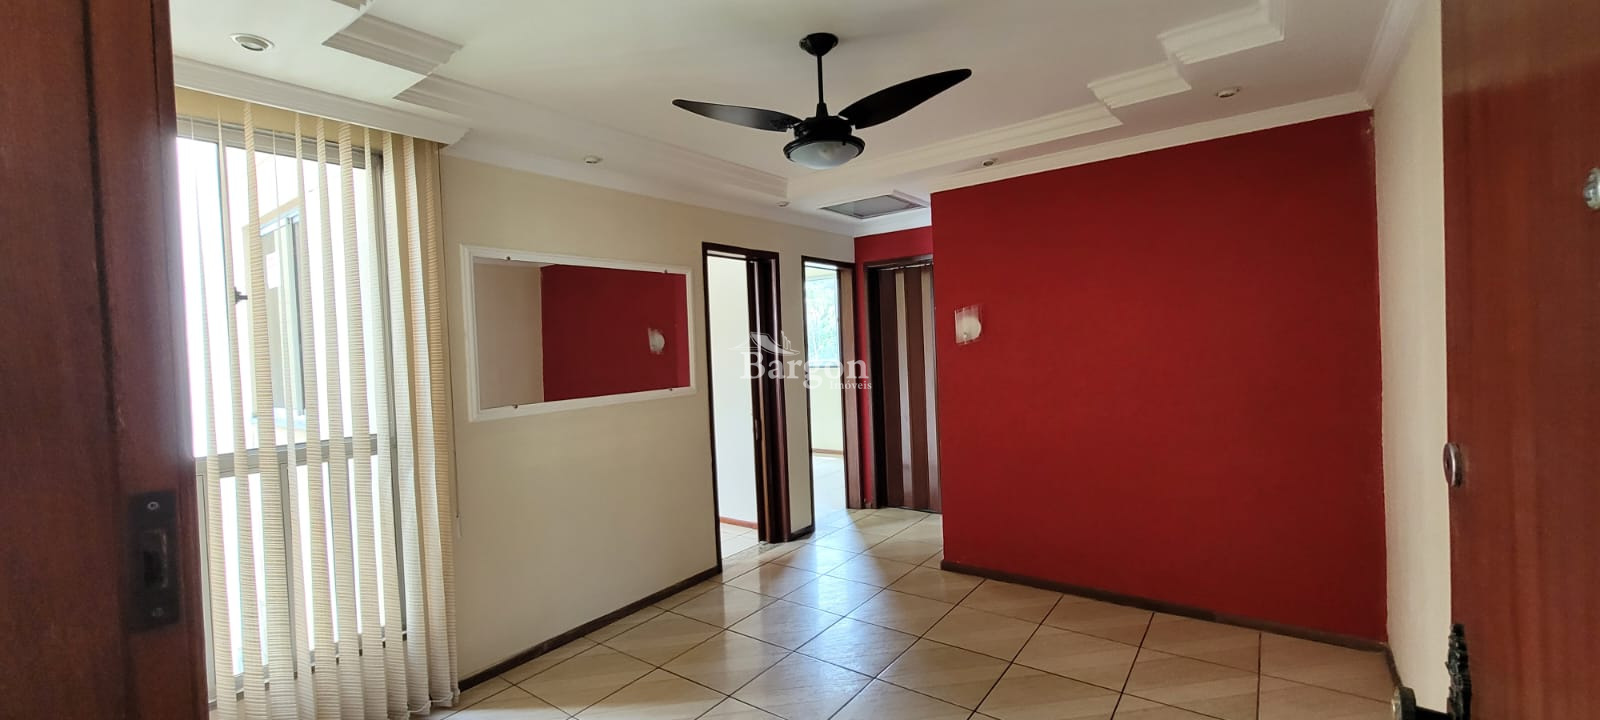 Apartamento à venda em Vivendas da Serra, Juiz de Fora - MG - Foto 3